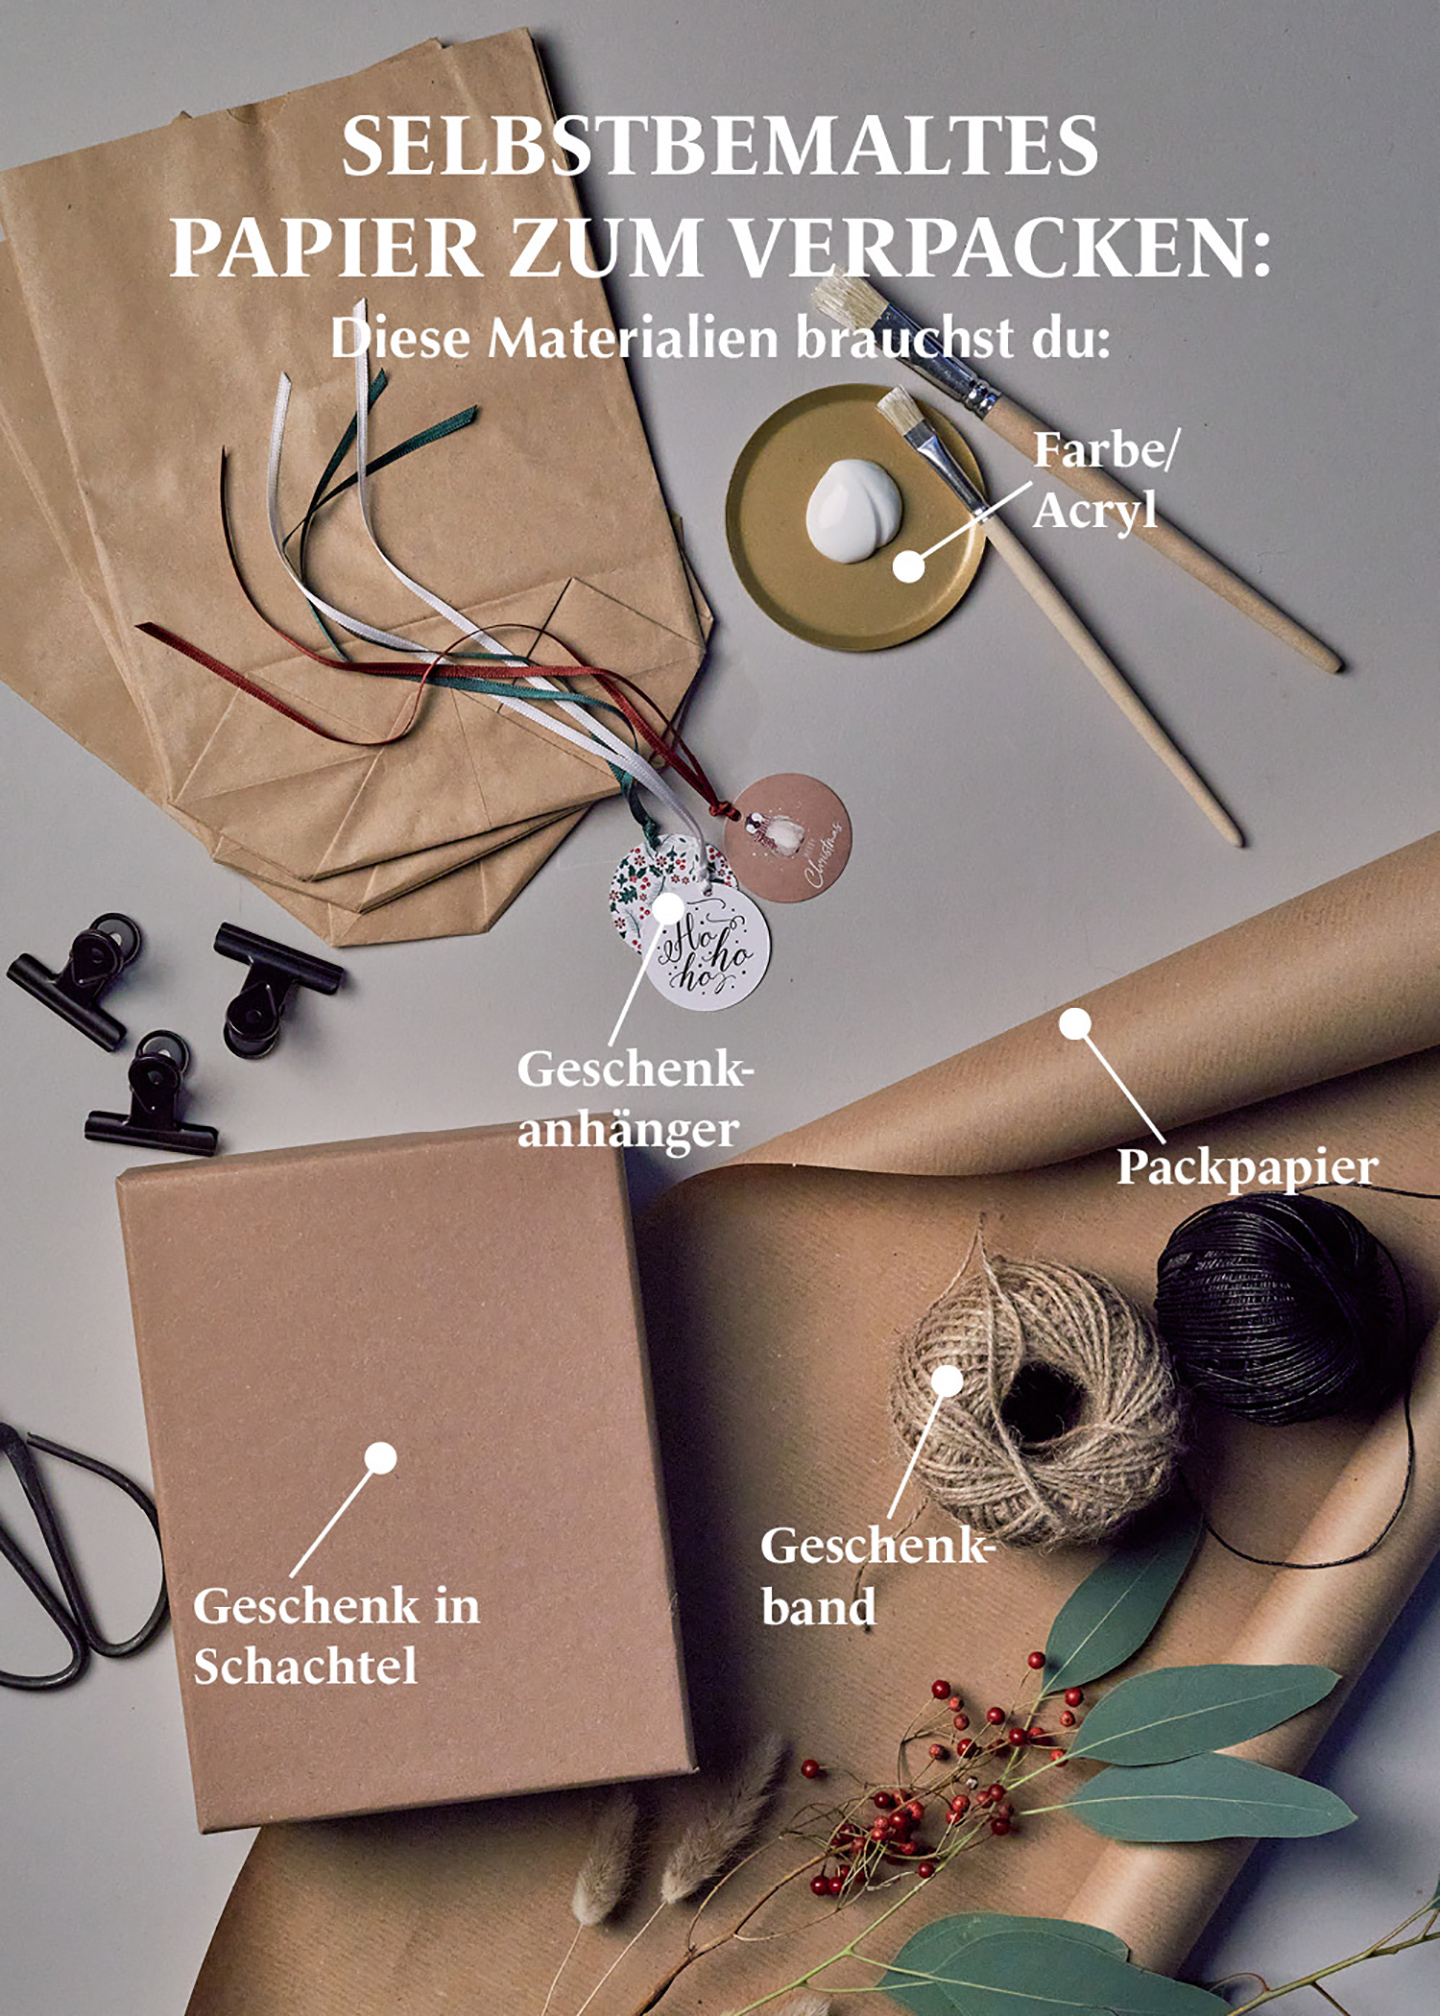 DIY Geschenkpapier selbstbemalen: Anleitung, Materialien erklärt